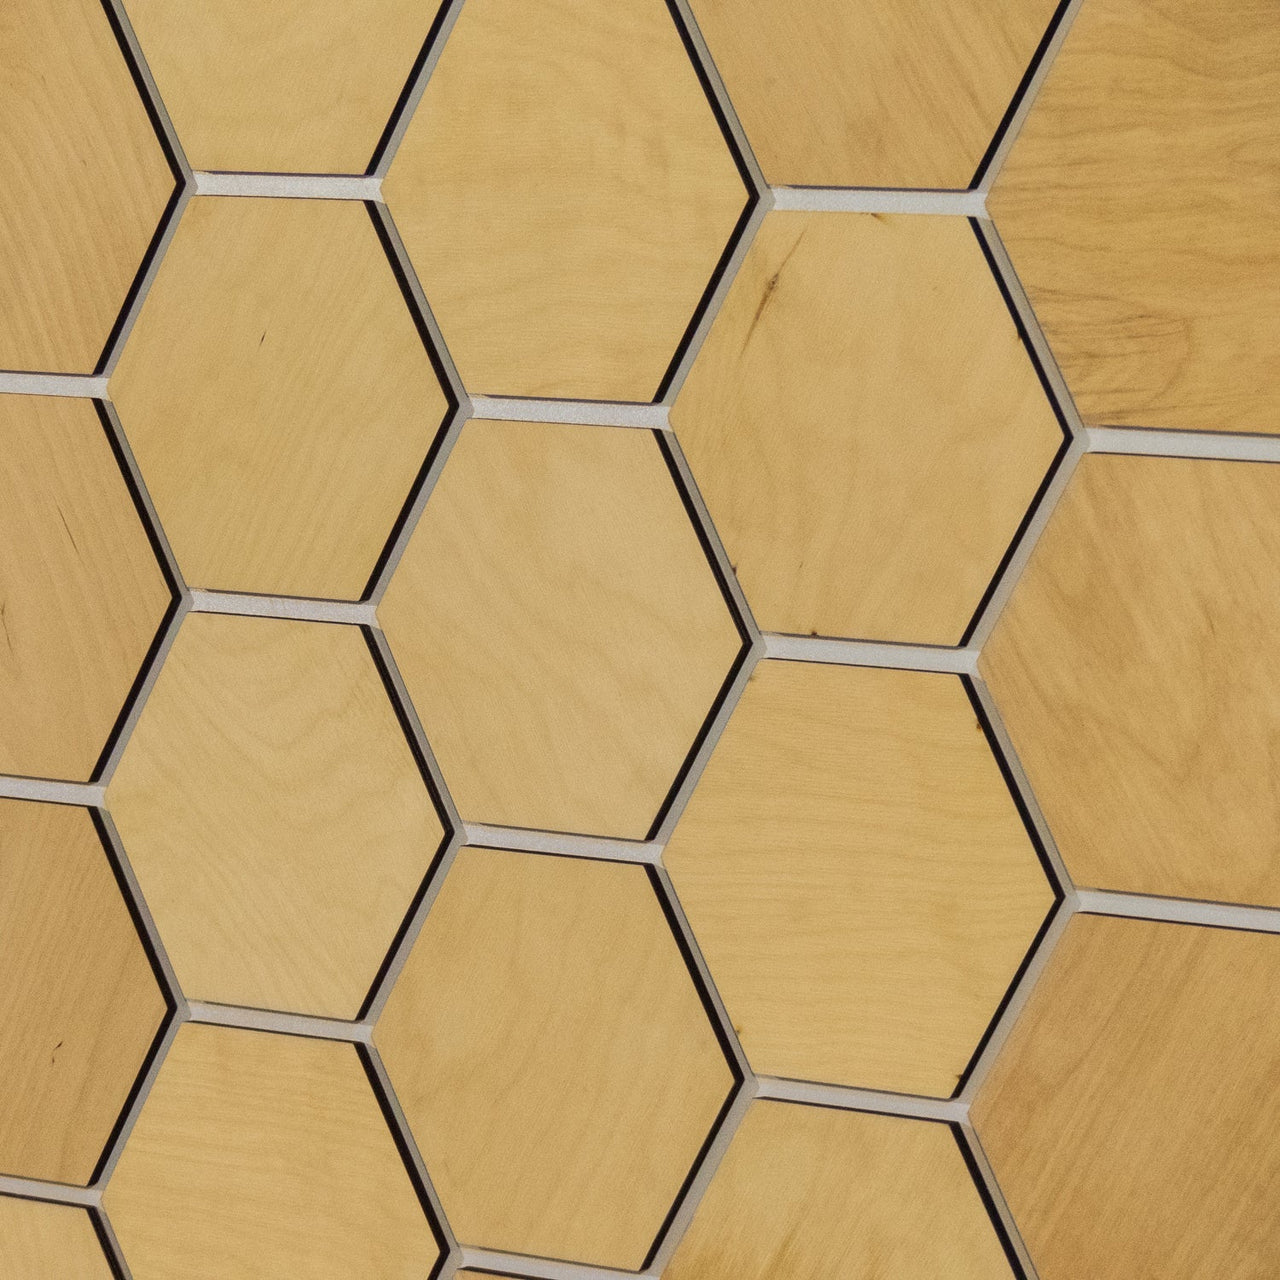 Light Hexagon Wooden Wall Panels by Hexagonica